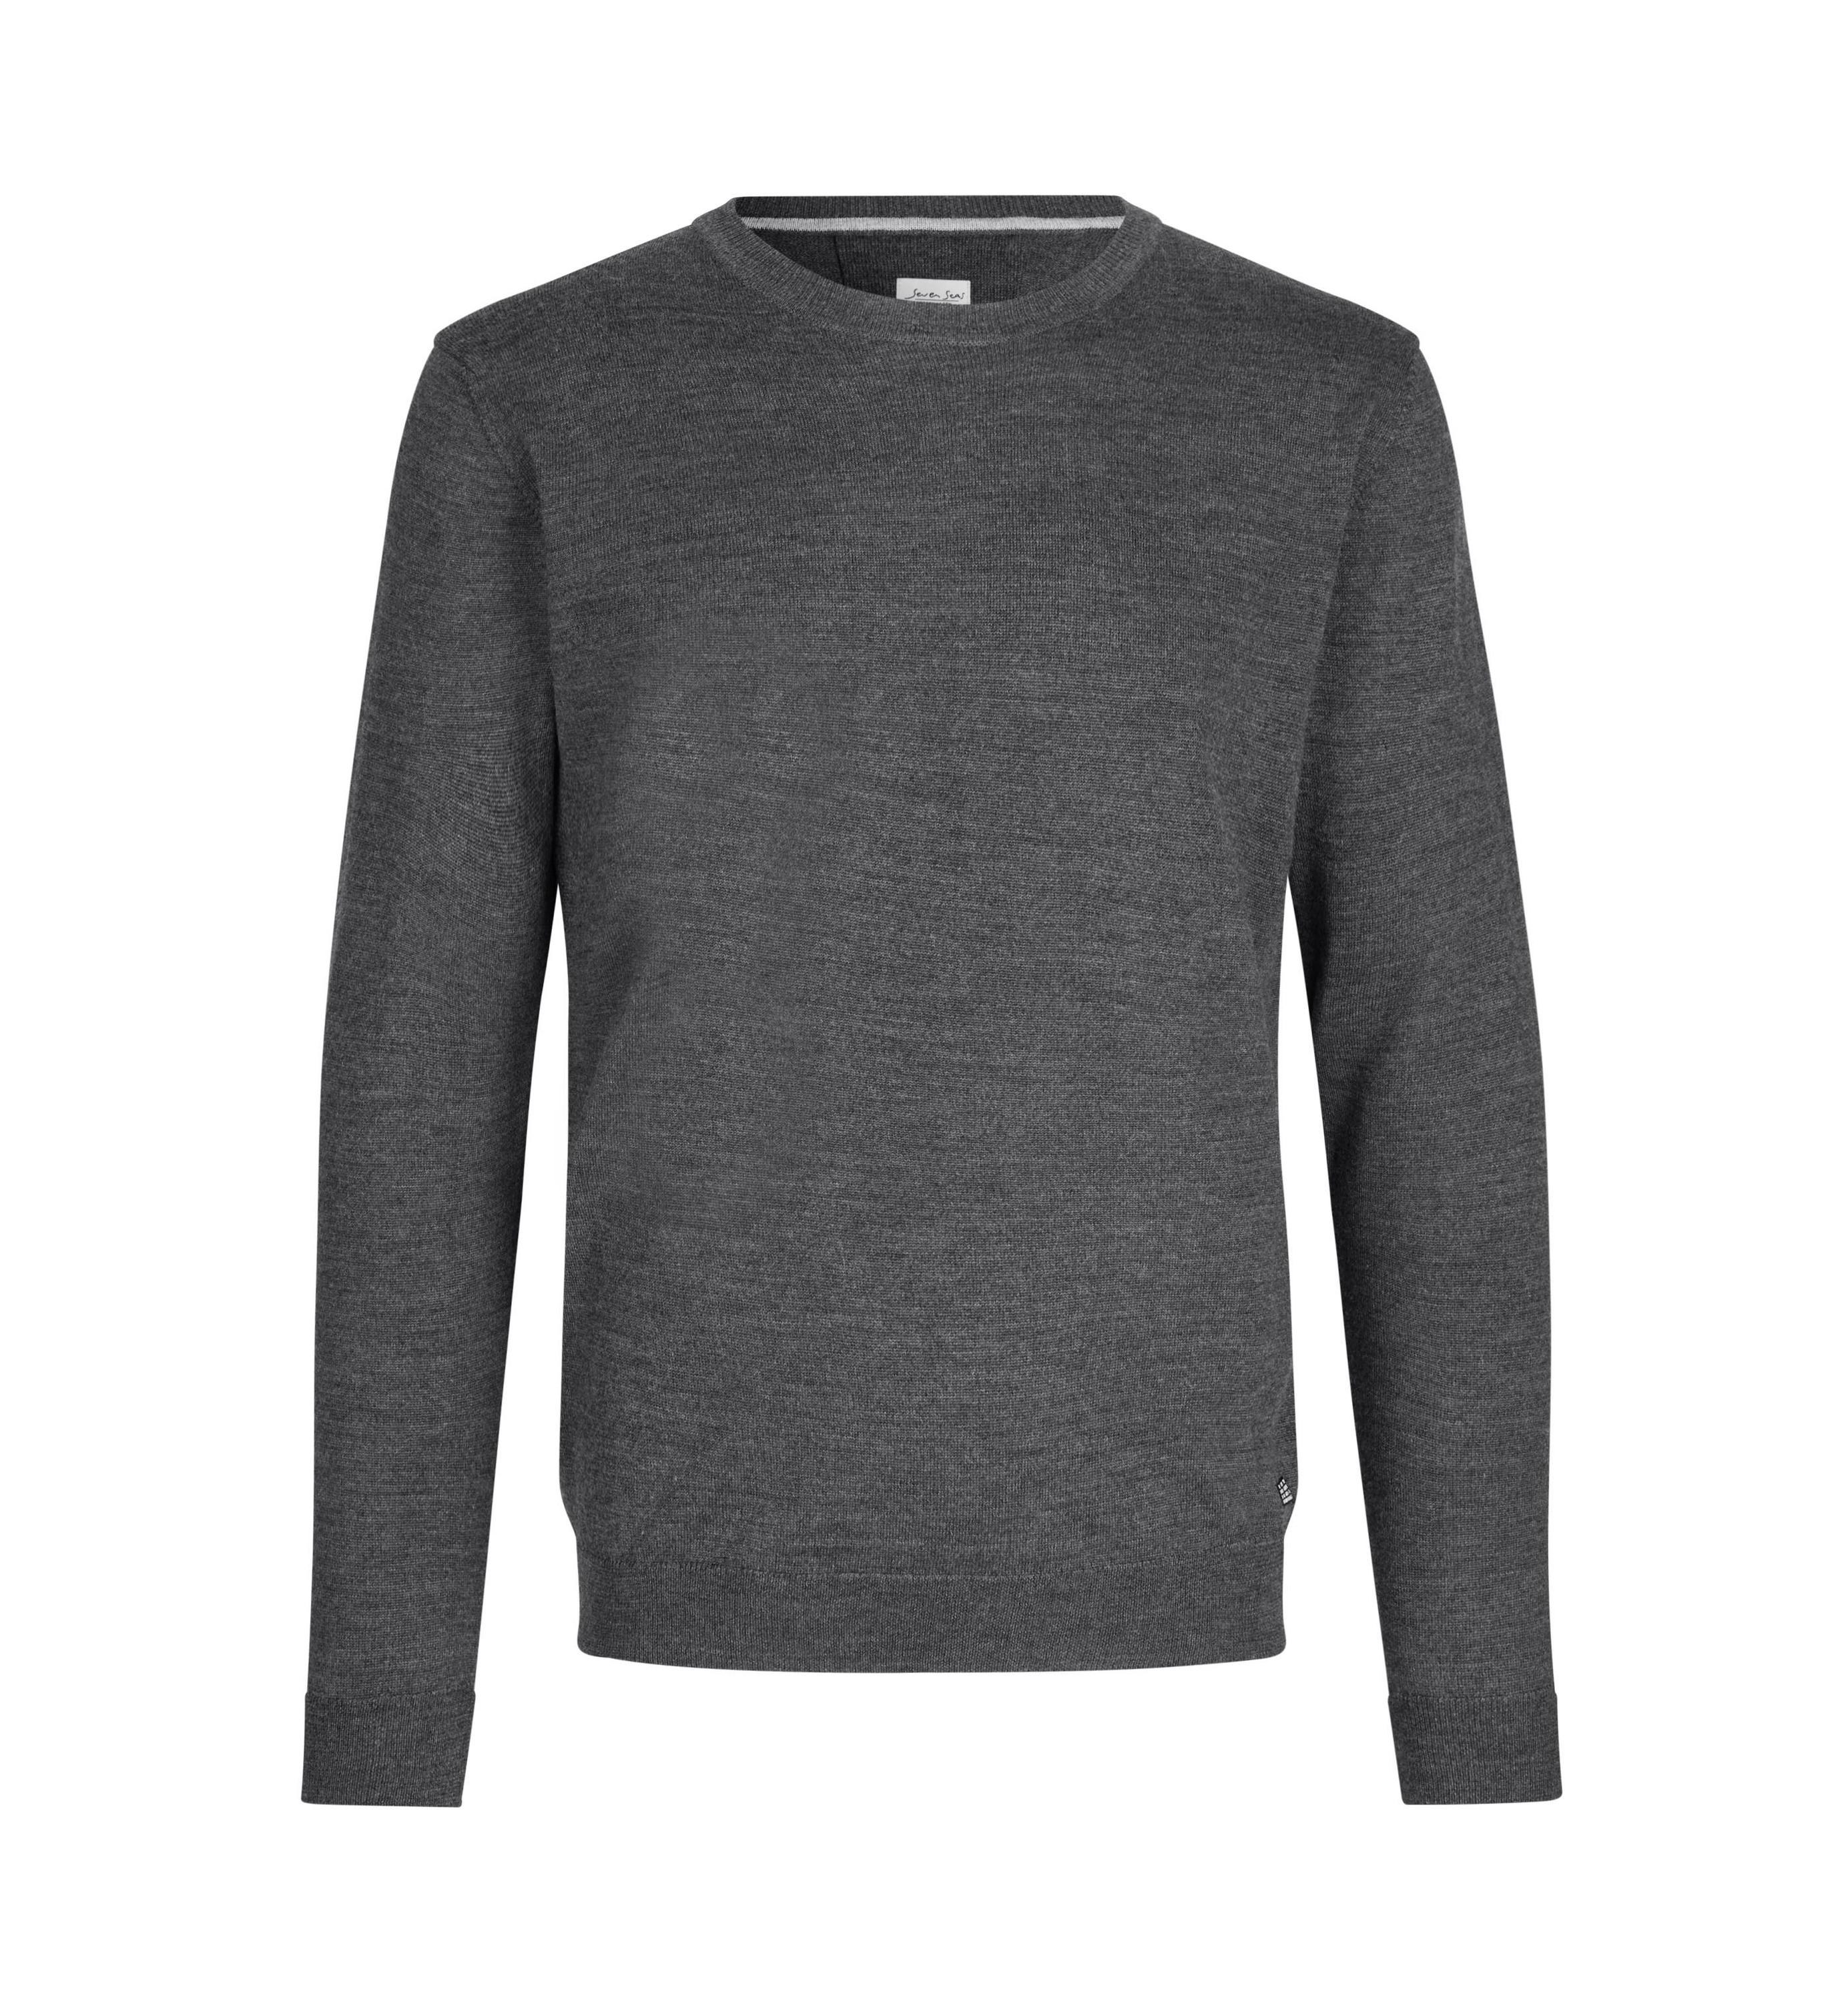 Пуловер Seven Seas knit, цвет Dunkel grau meliert носки elbsand цвет 2x dunkel jeans meliert 1x hell jeans meliert